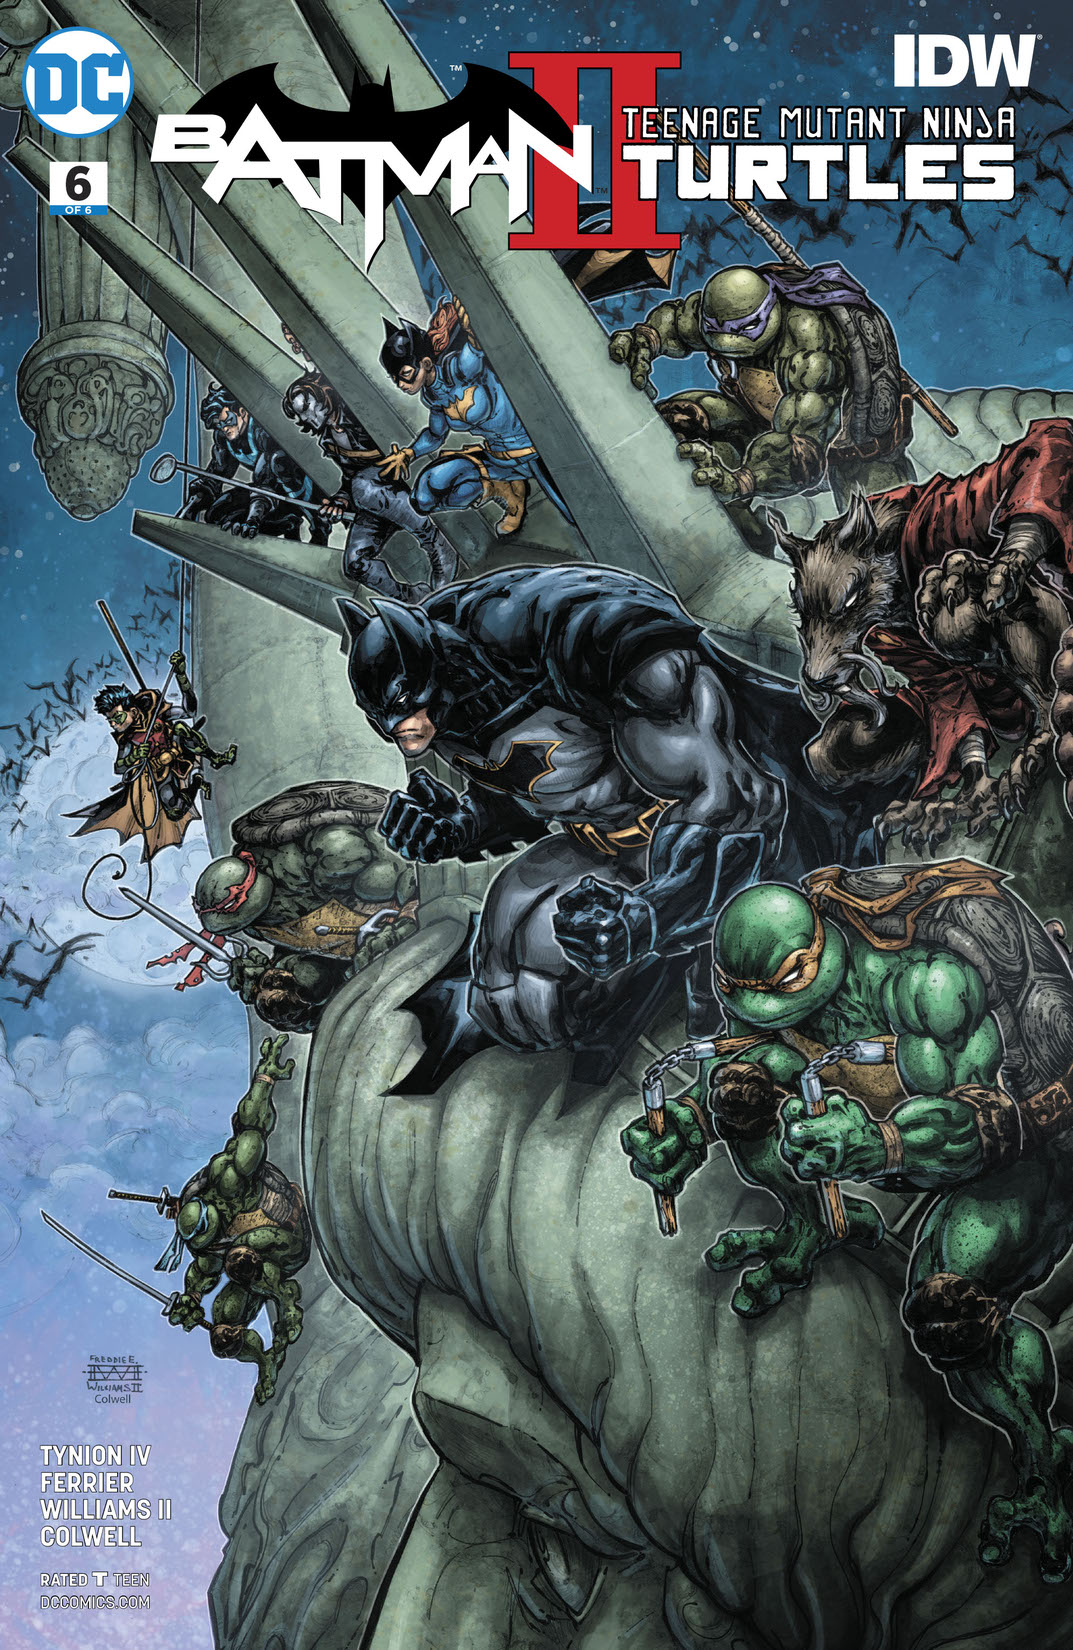 Batman/Teenage Mutant Ninja Turtles II #6 preview images